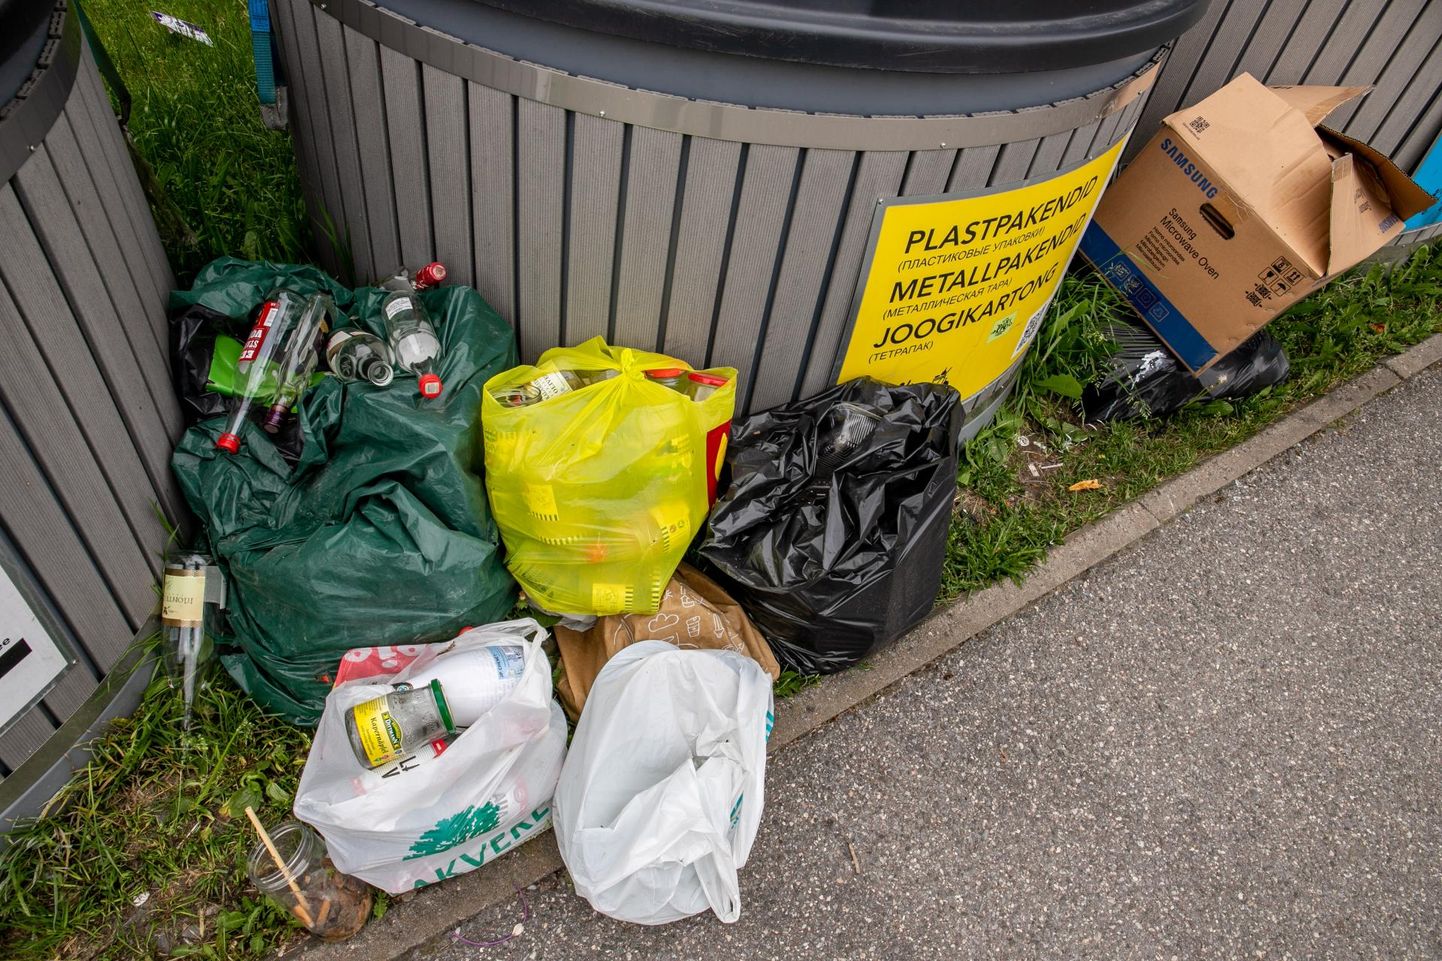 Ka meie maakonnas ei ole võõras pilt, kus prügikonteinerite ümbrus on eri jäätmetega palistatud. 